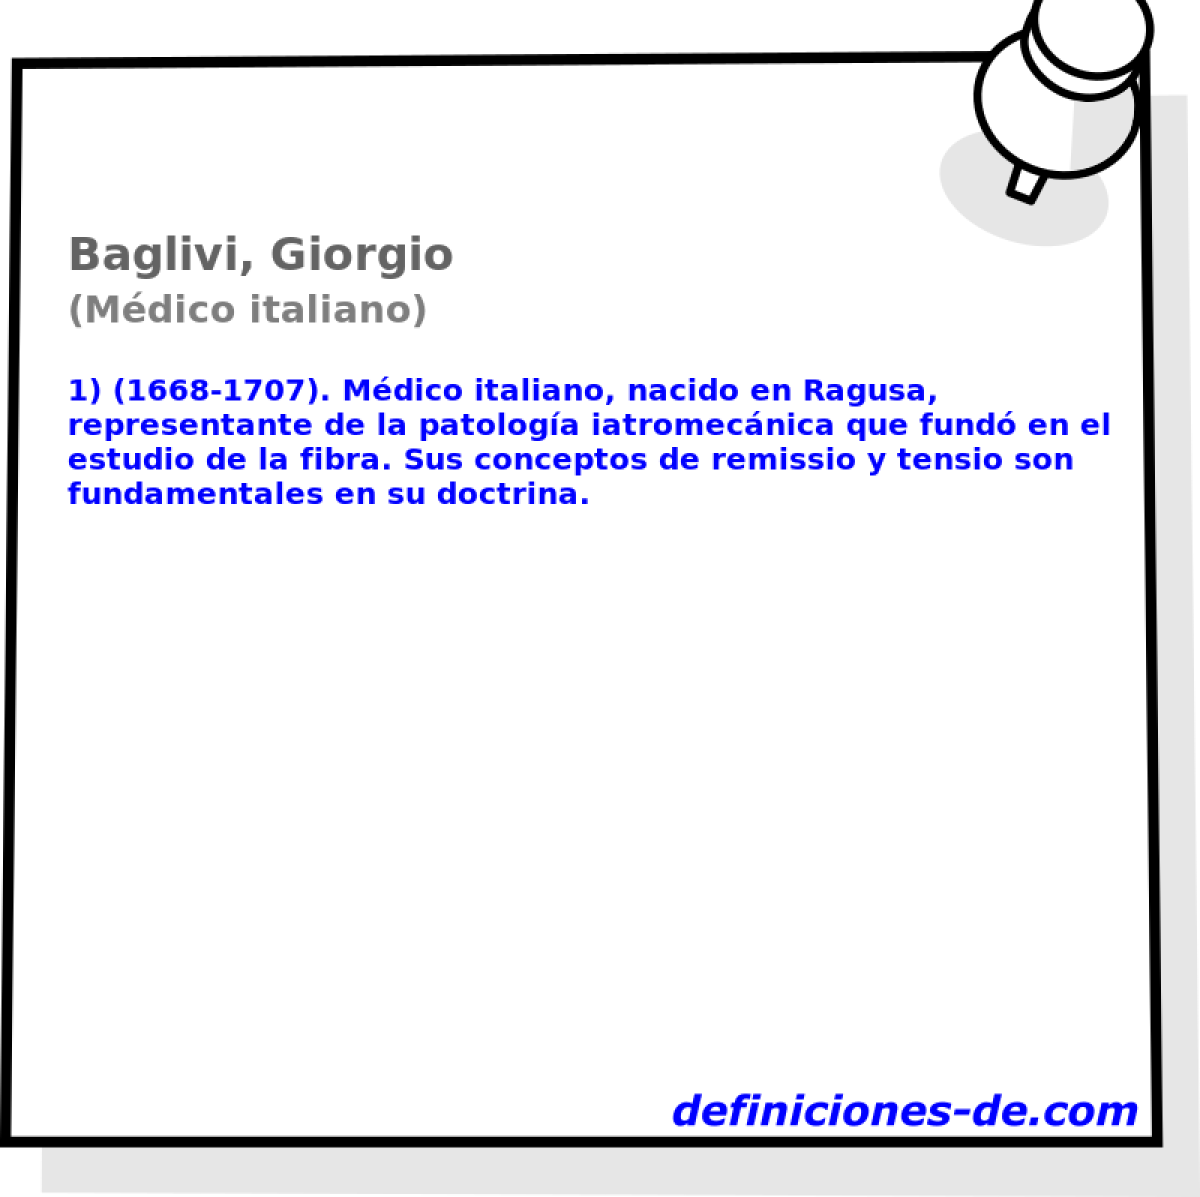 Baglivi, Giorgio (Mdico italiano)